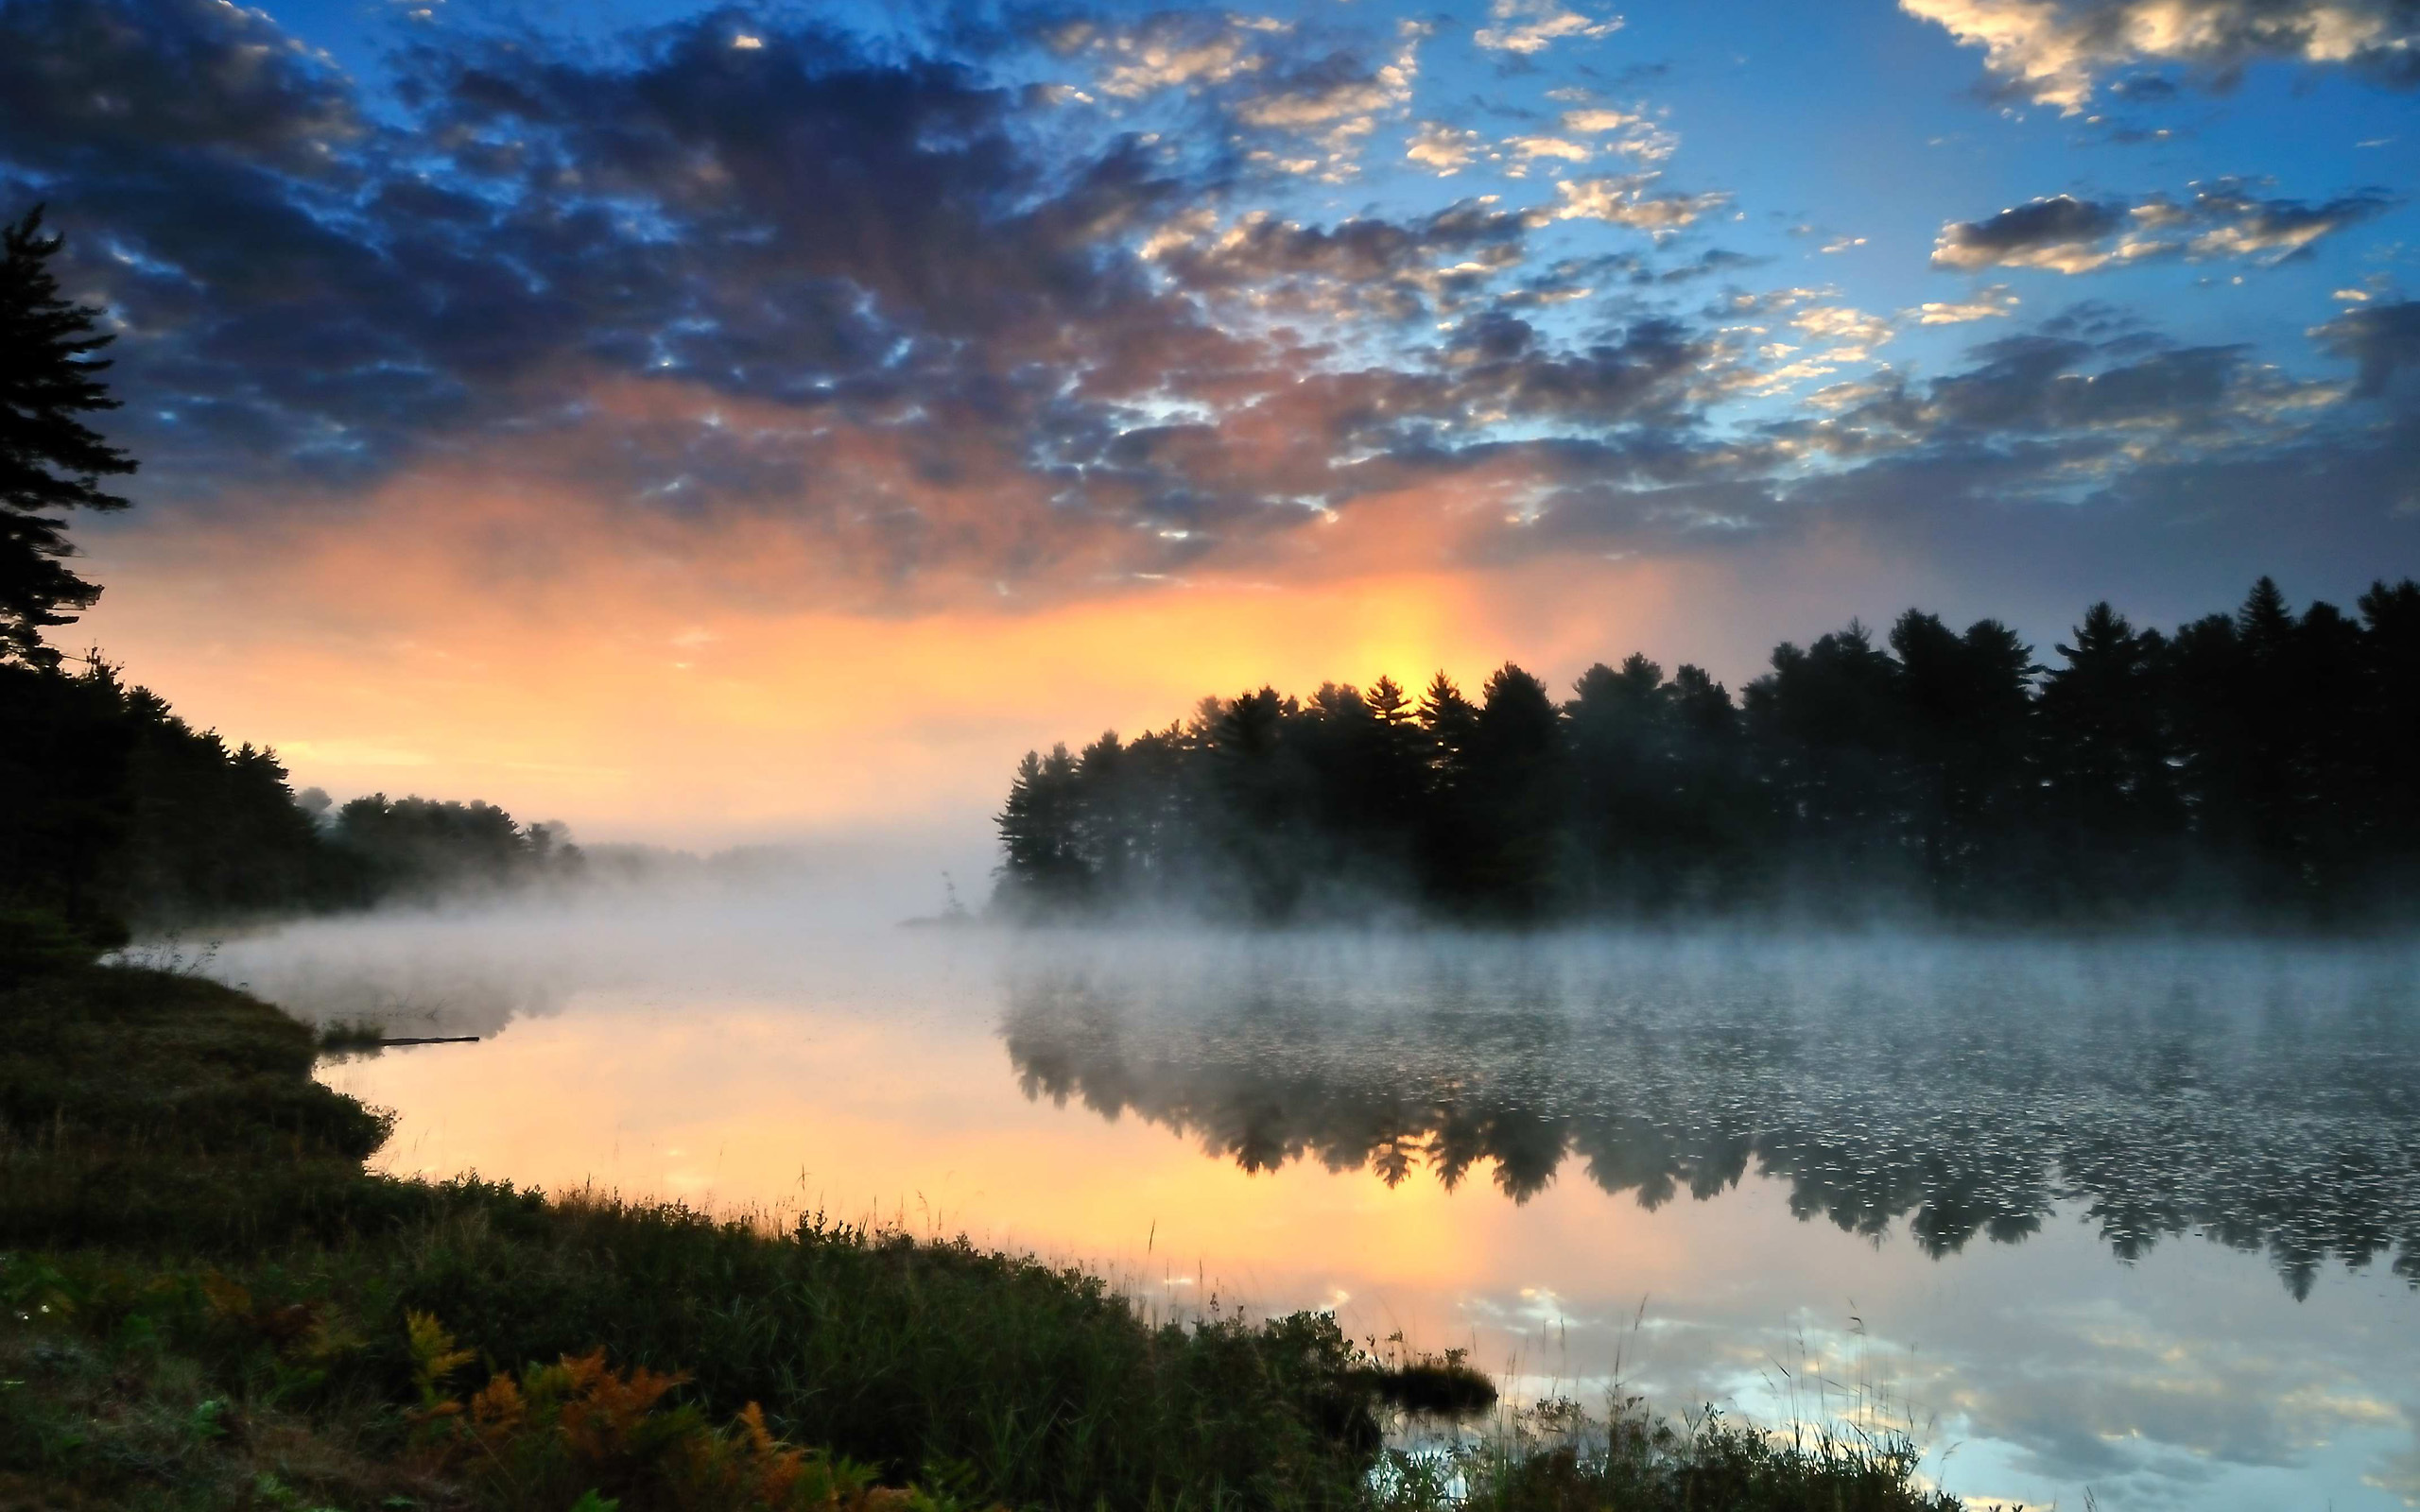 Бесплатные картинки утро. Озеро туман рассвет. Пейзаж с рекой. Закат на реке. Завораживающая природа.